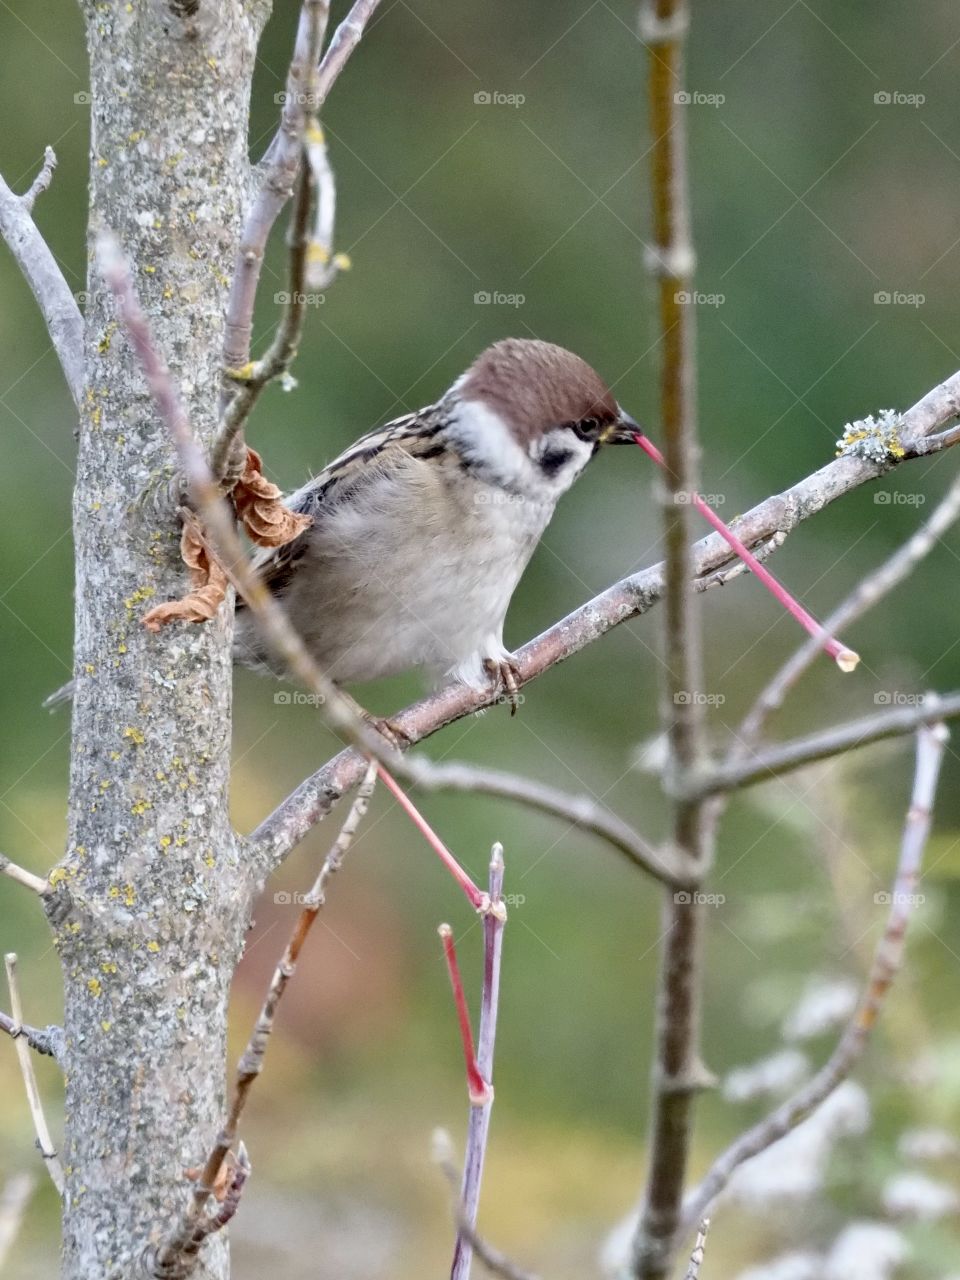 Little sparrow